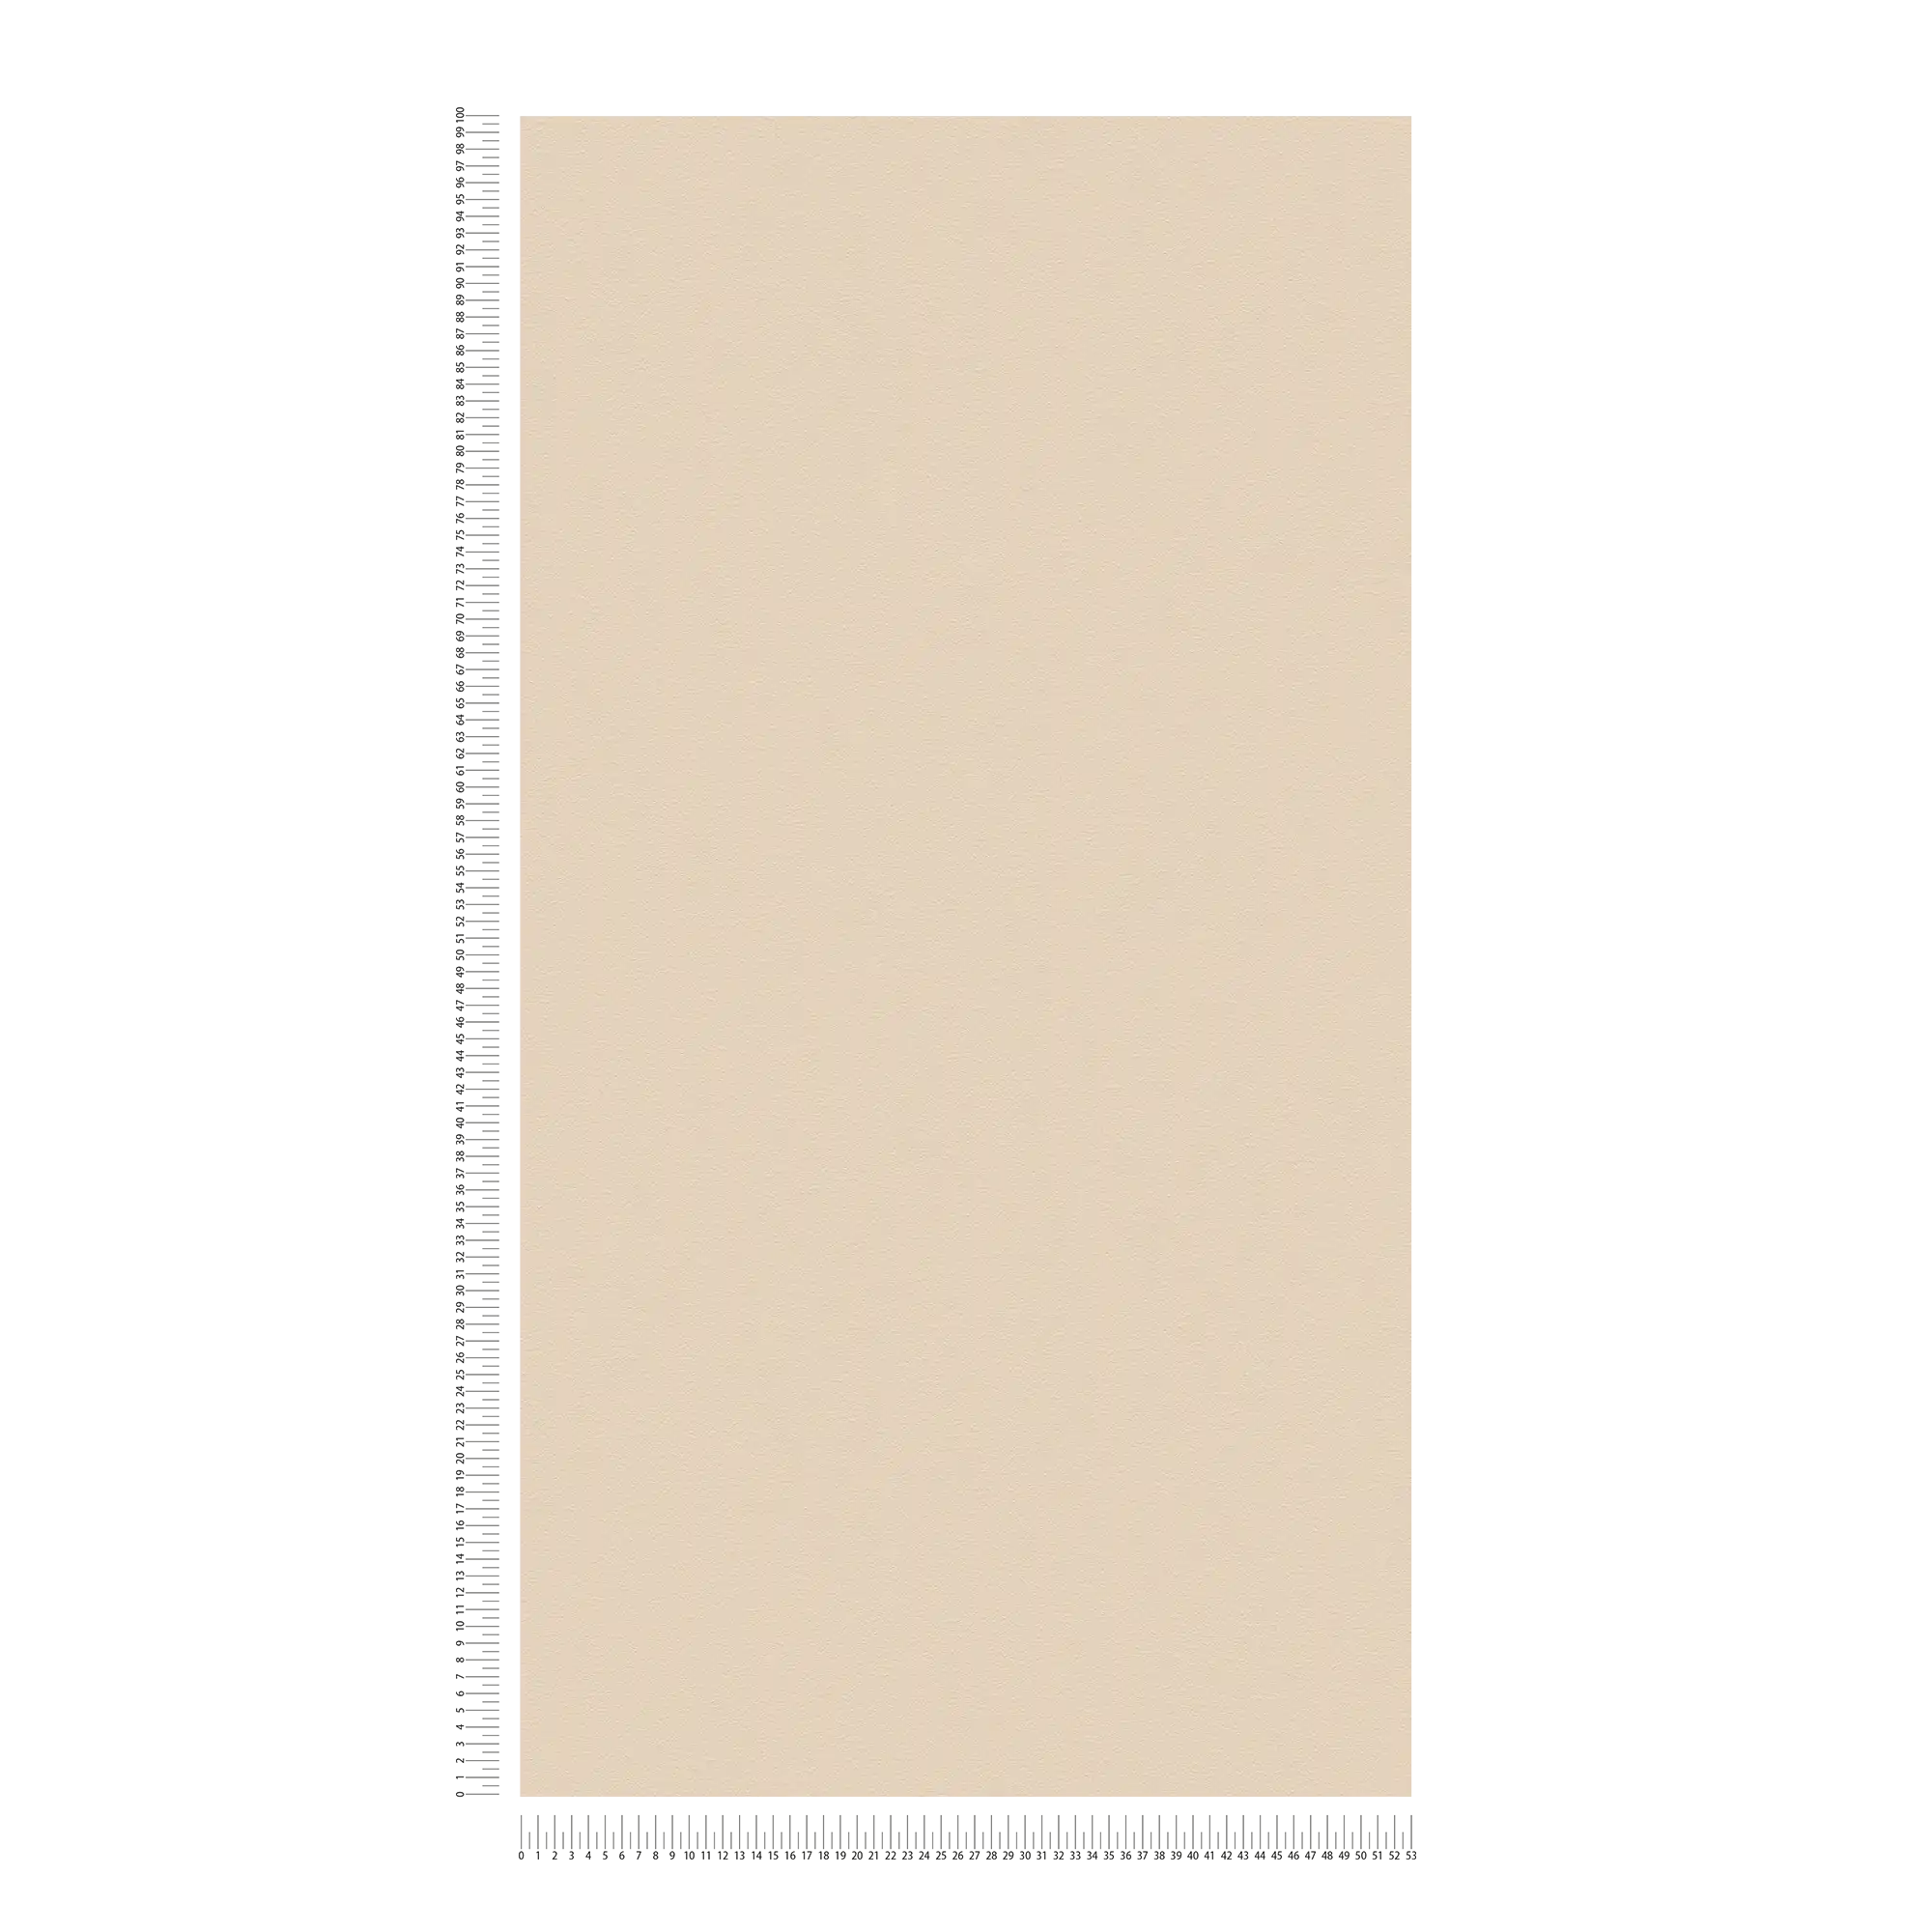             papier peint beige uni avec peau d'éléphant structure mousse
        